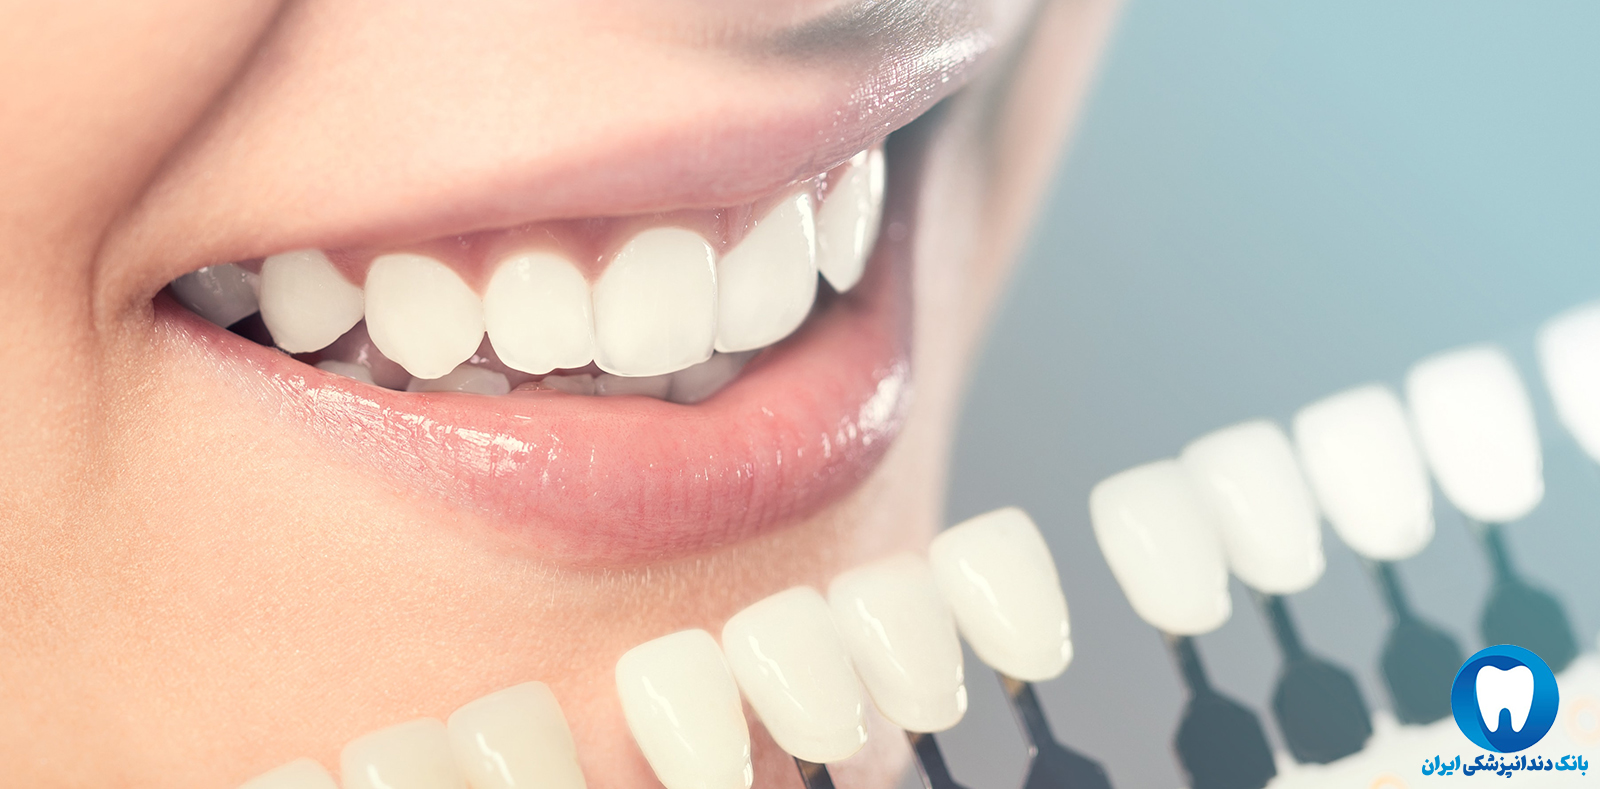 بهترین دکتر برای کامپوزیت دندان در تبریز